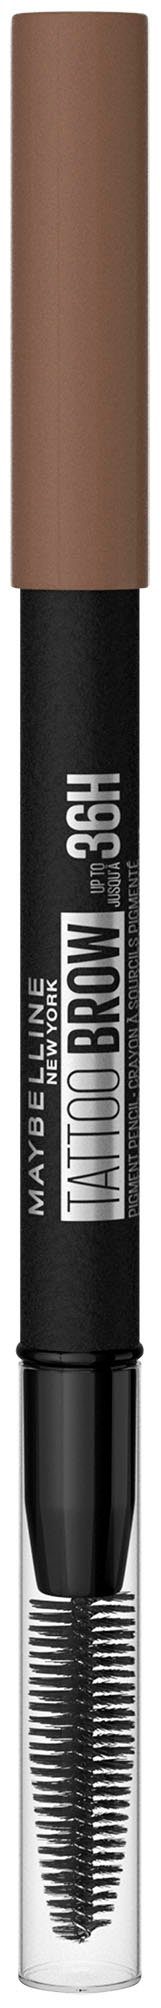 MAYBELLINE NEW YORK 6 mit Augen-Make-Up wasserfeste Bürste, Augenbrauen-Stift 36H, Brow Brown Formel, Ash Tattoo